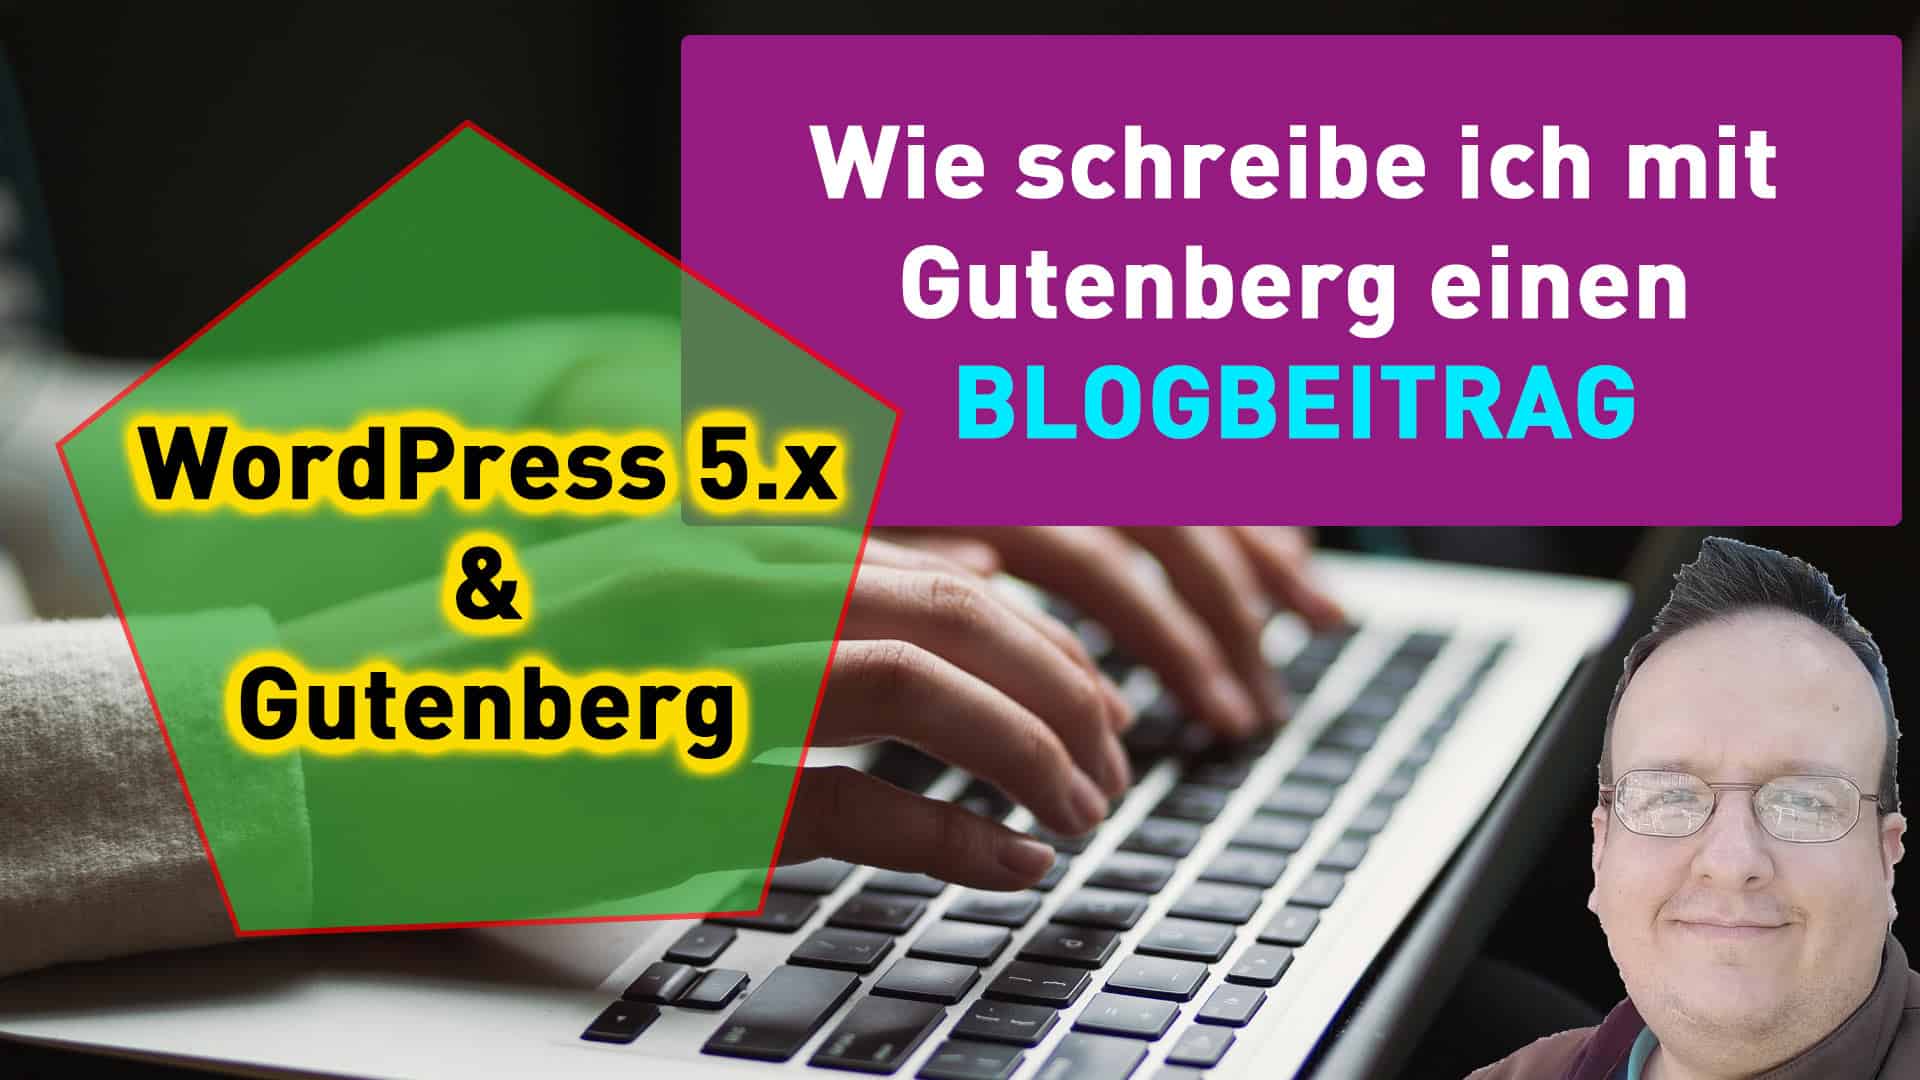 Wie schreibe ich mit Gutenberg einen Blogbeitrag?